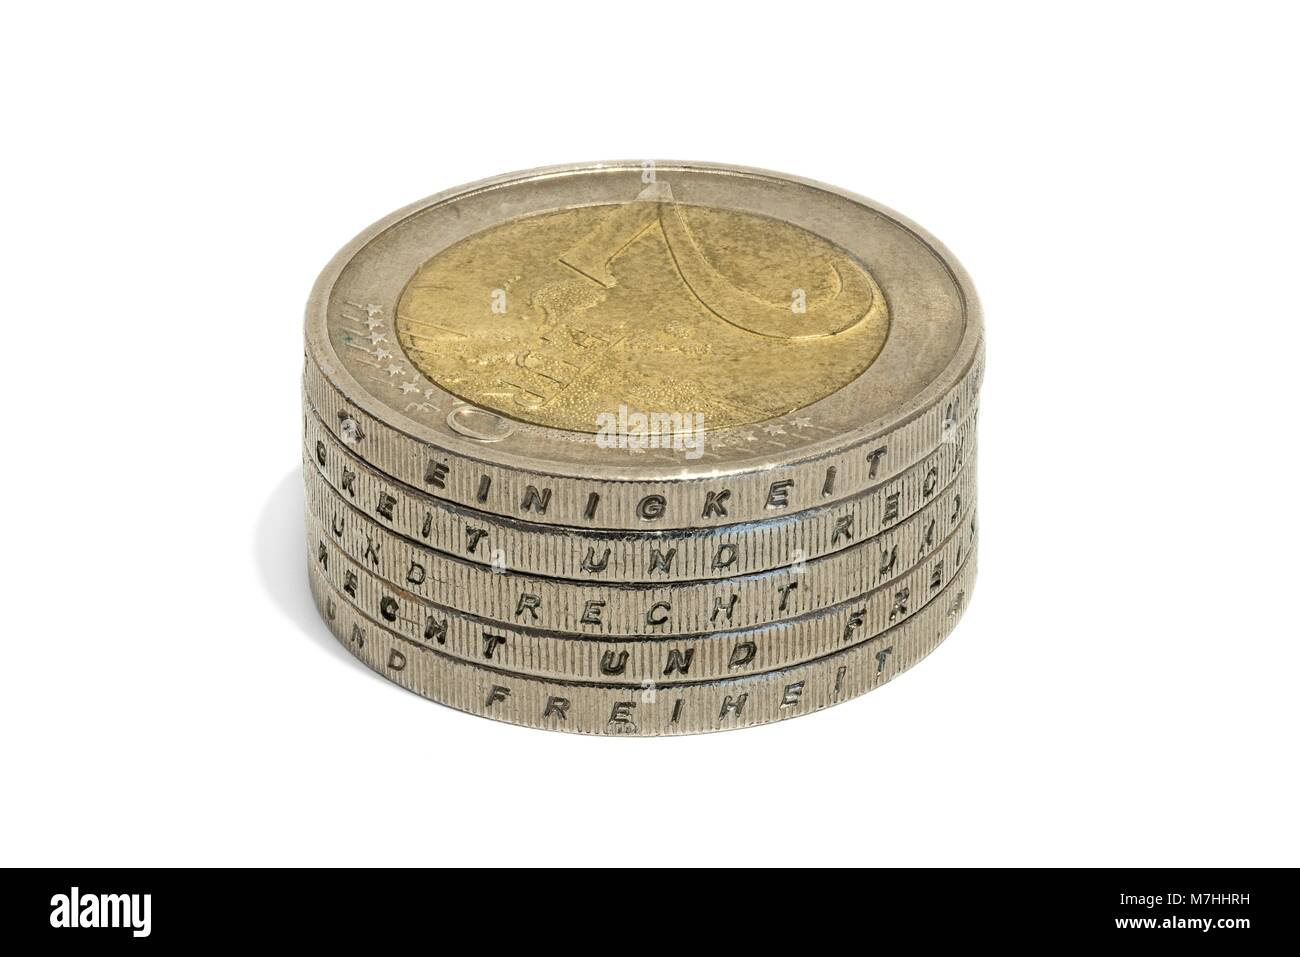 Les pièces en euros empilés avec les mots allemands - unité et droit et liberté Banque D'Images